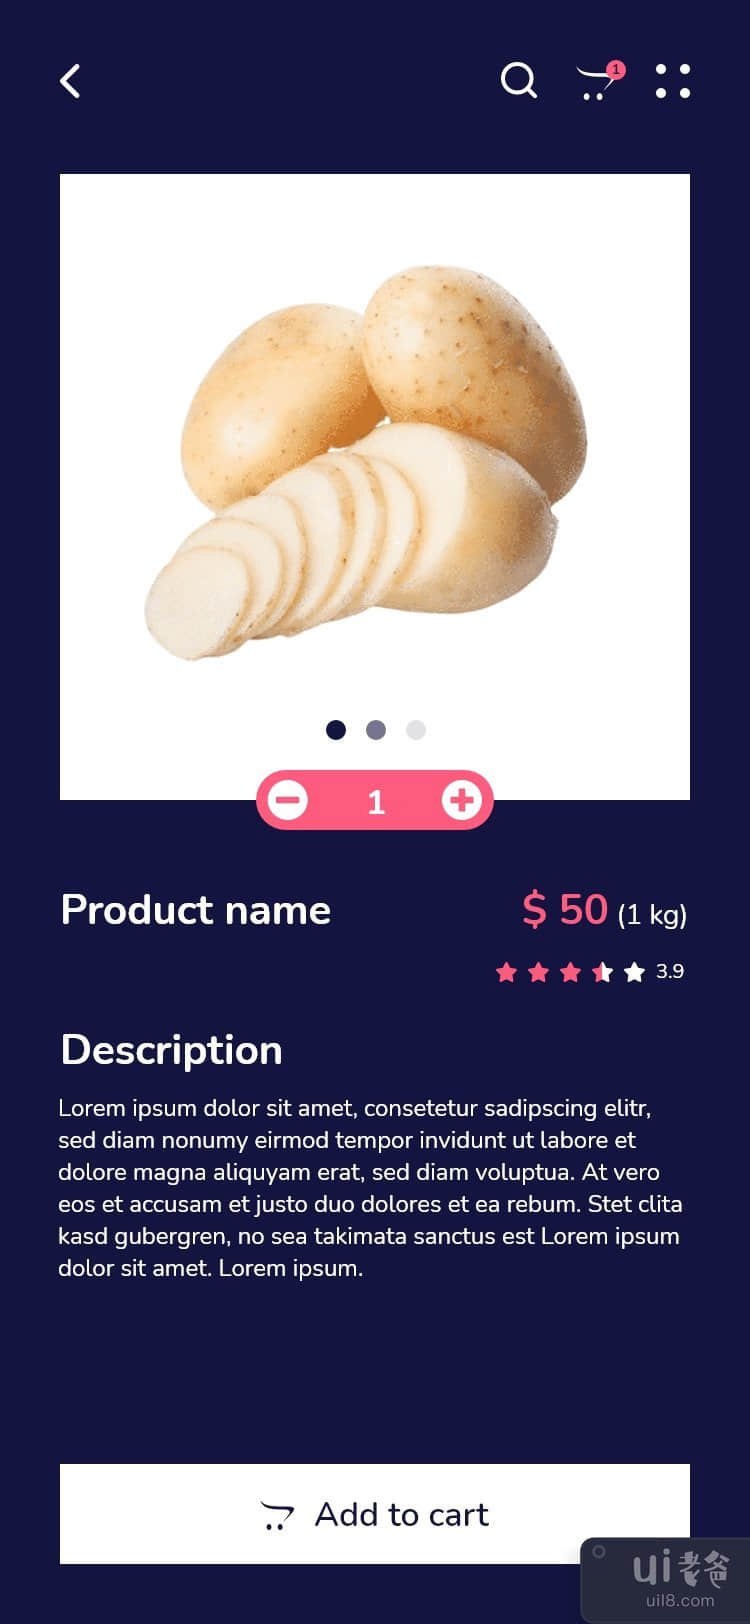 免费下载在线杂货购物应用程序 UI 工具包模板设计(Free Download Online Grocery Shopping App UI Kit Template Design)插图2